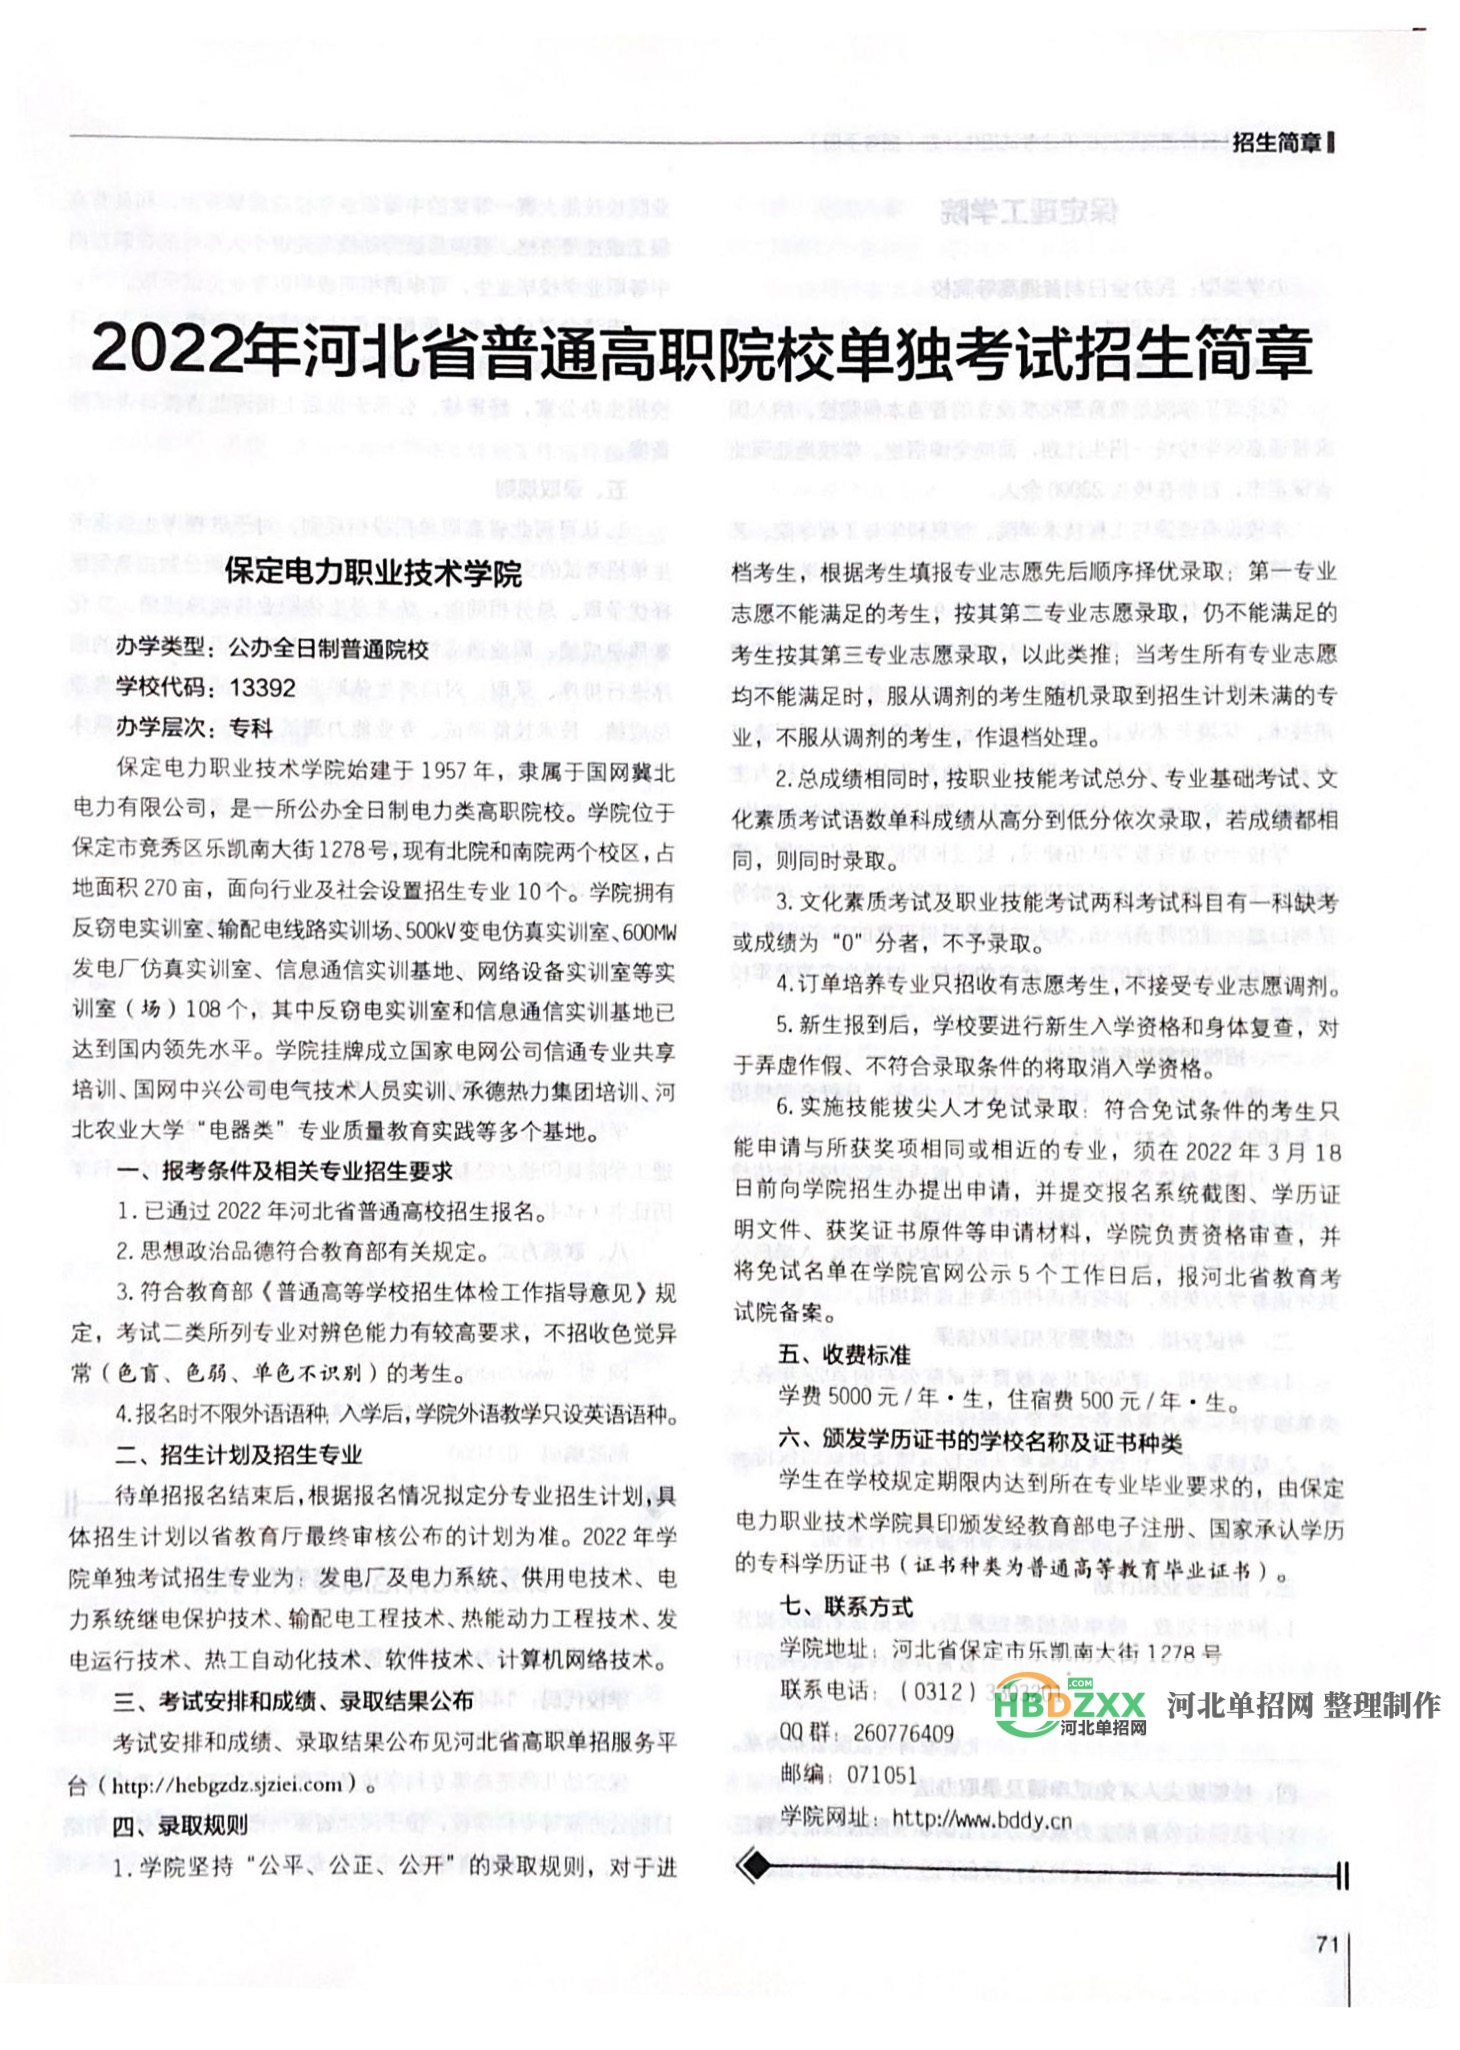 保定电力职业技术学院2022年单招招生简章 图1